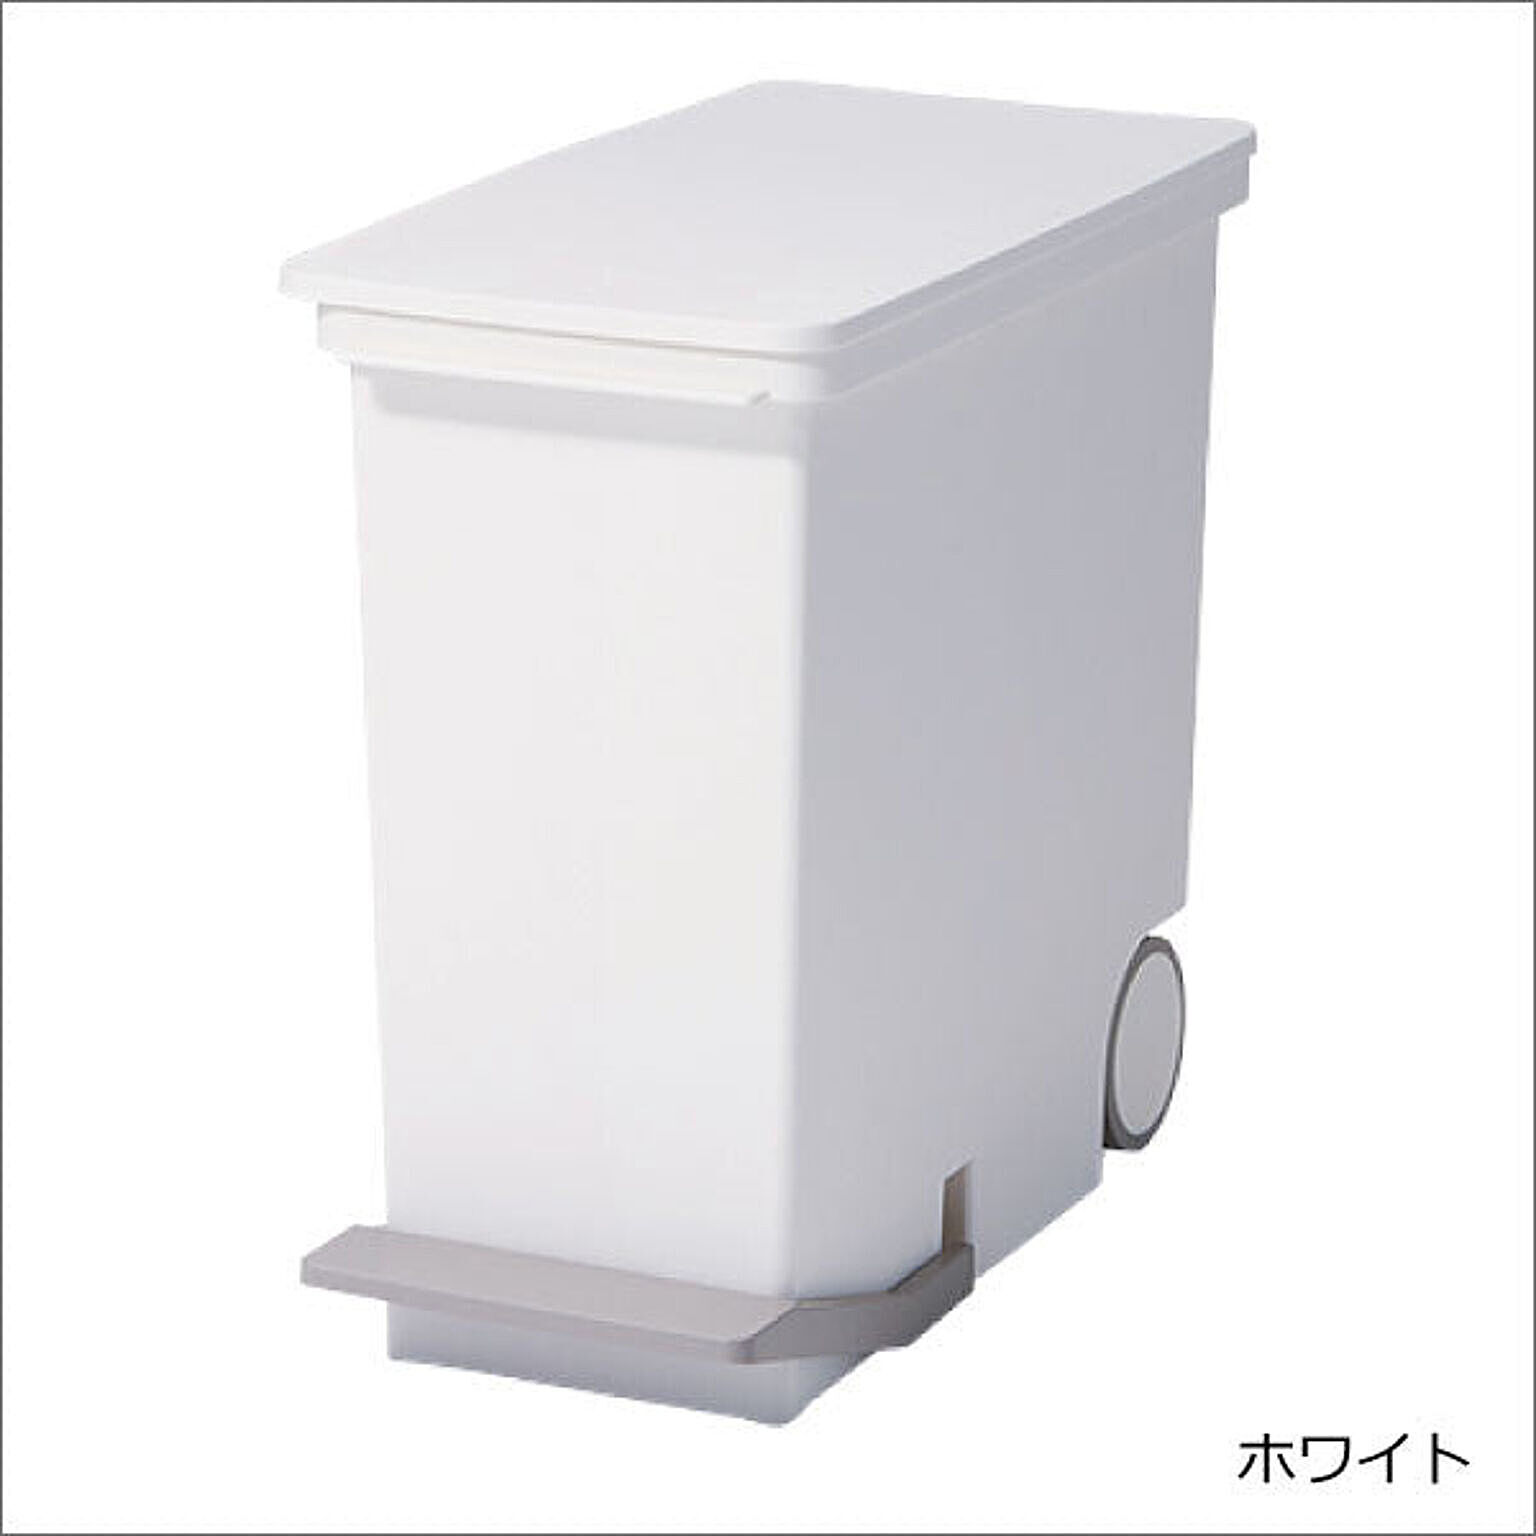 KEYUCA公式店】ケユカ arrots ダストボックスII ゴミ箱 L 27L ホワイト